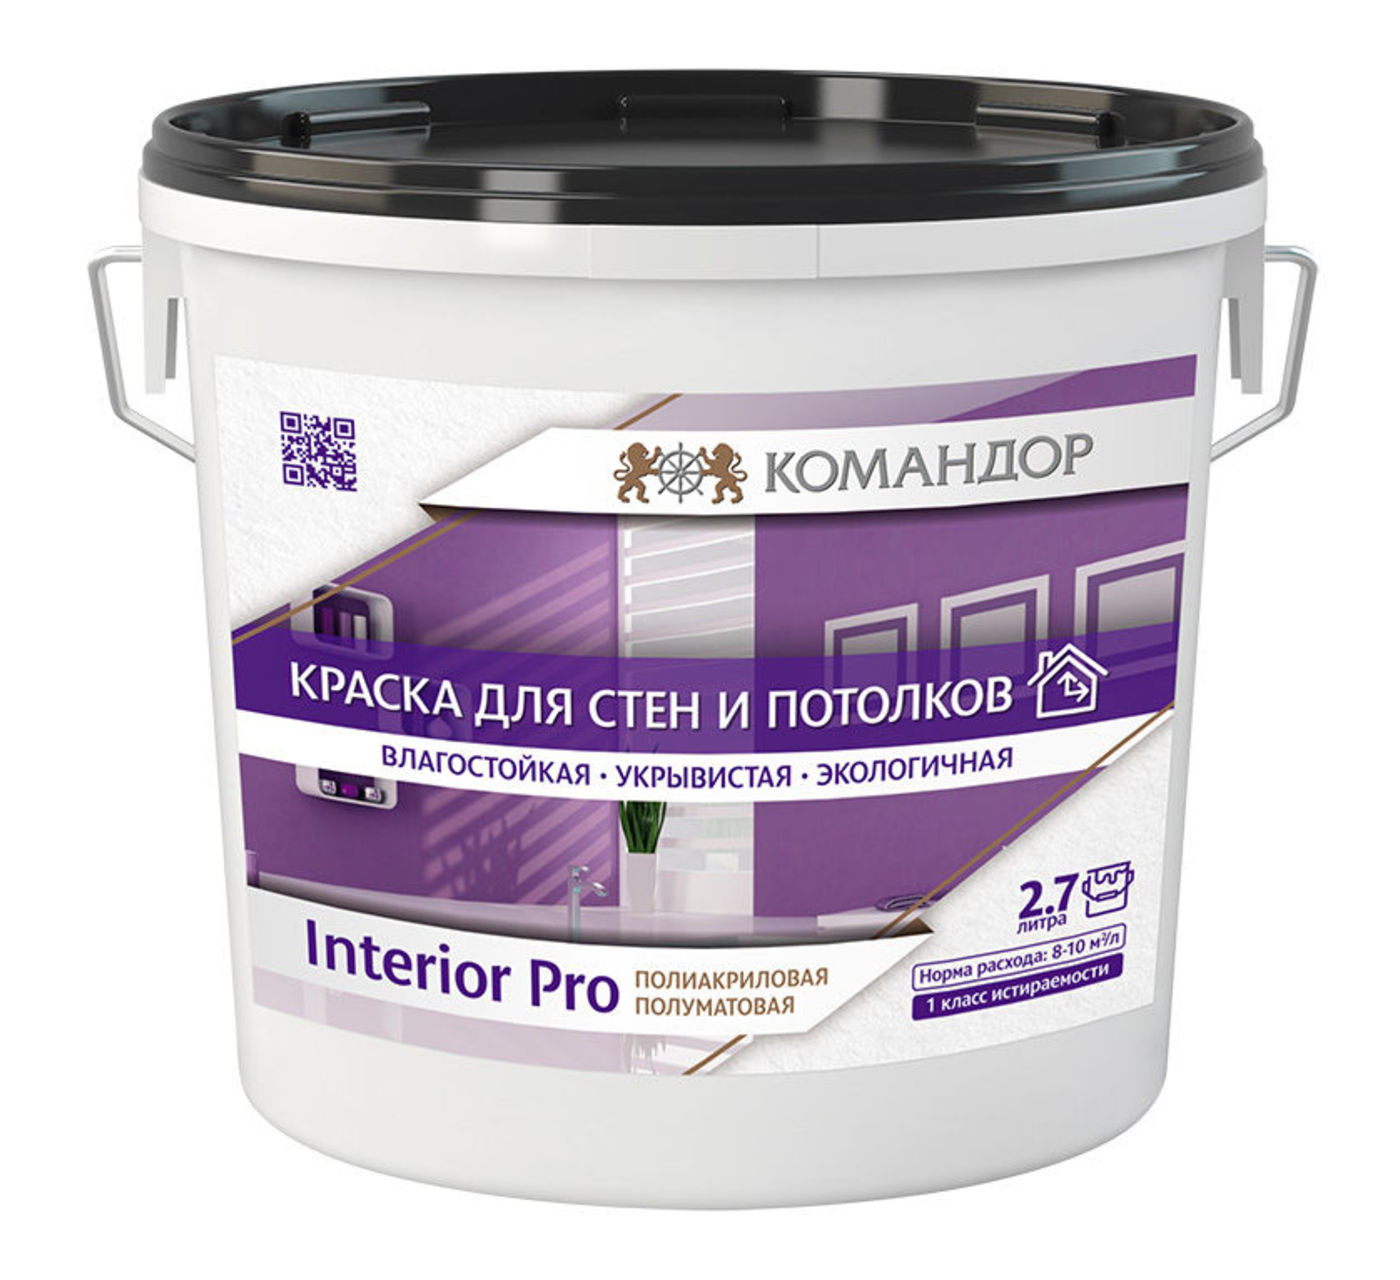 INTERIOR PRO водно-дисперсионная полиакриловая краска для стен и потолков